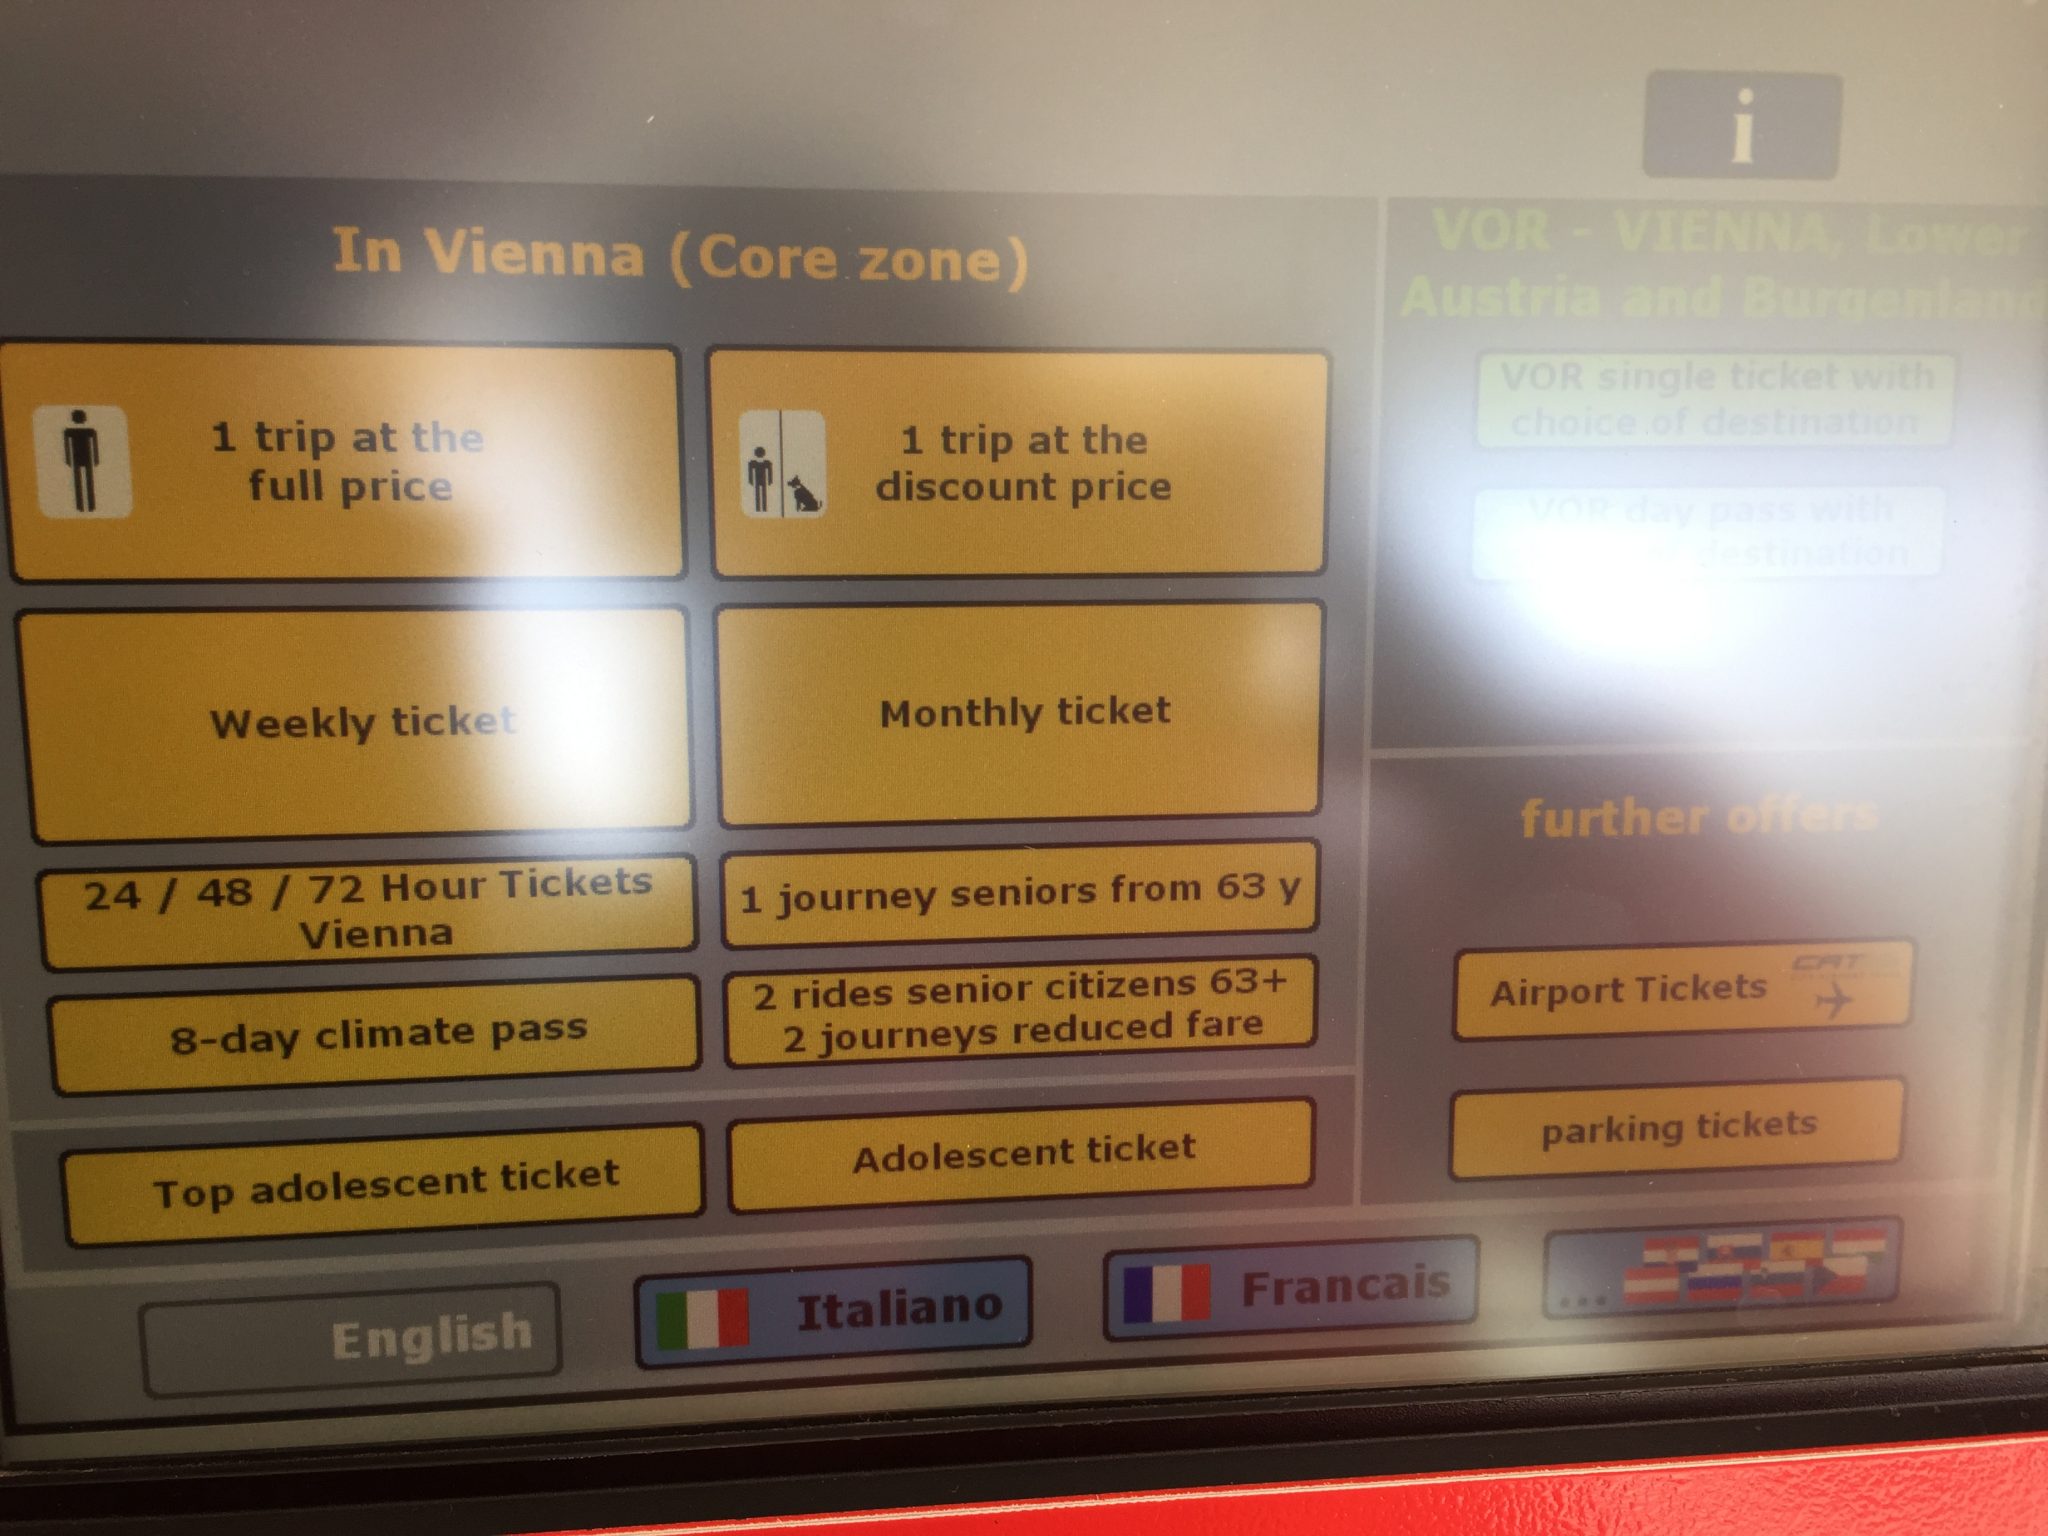 匈牙利地鐵自助購票機直接列出常用語言選項。